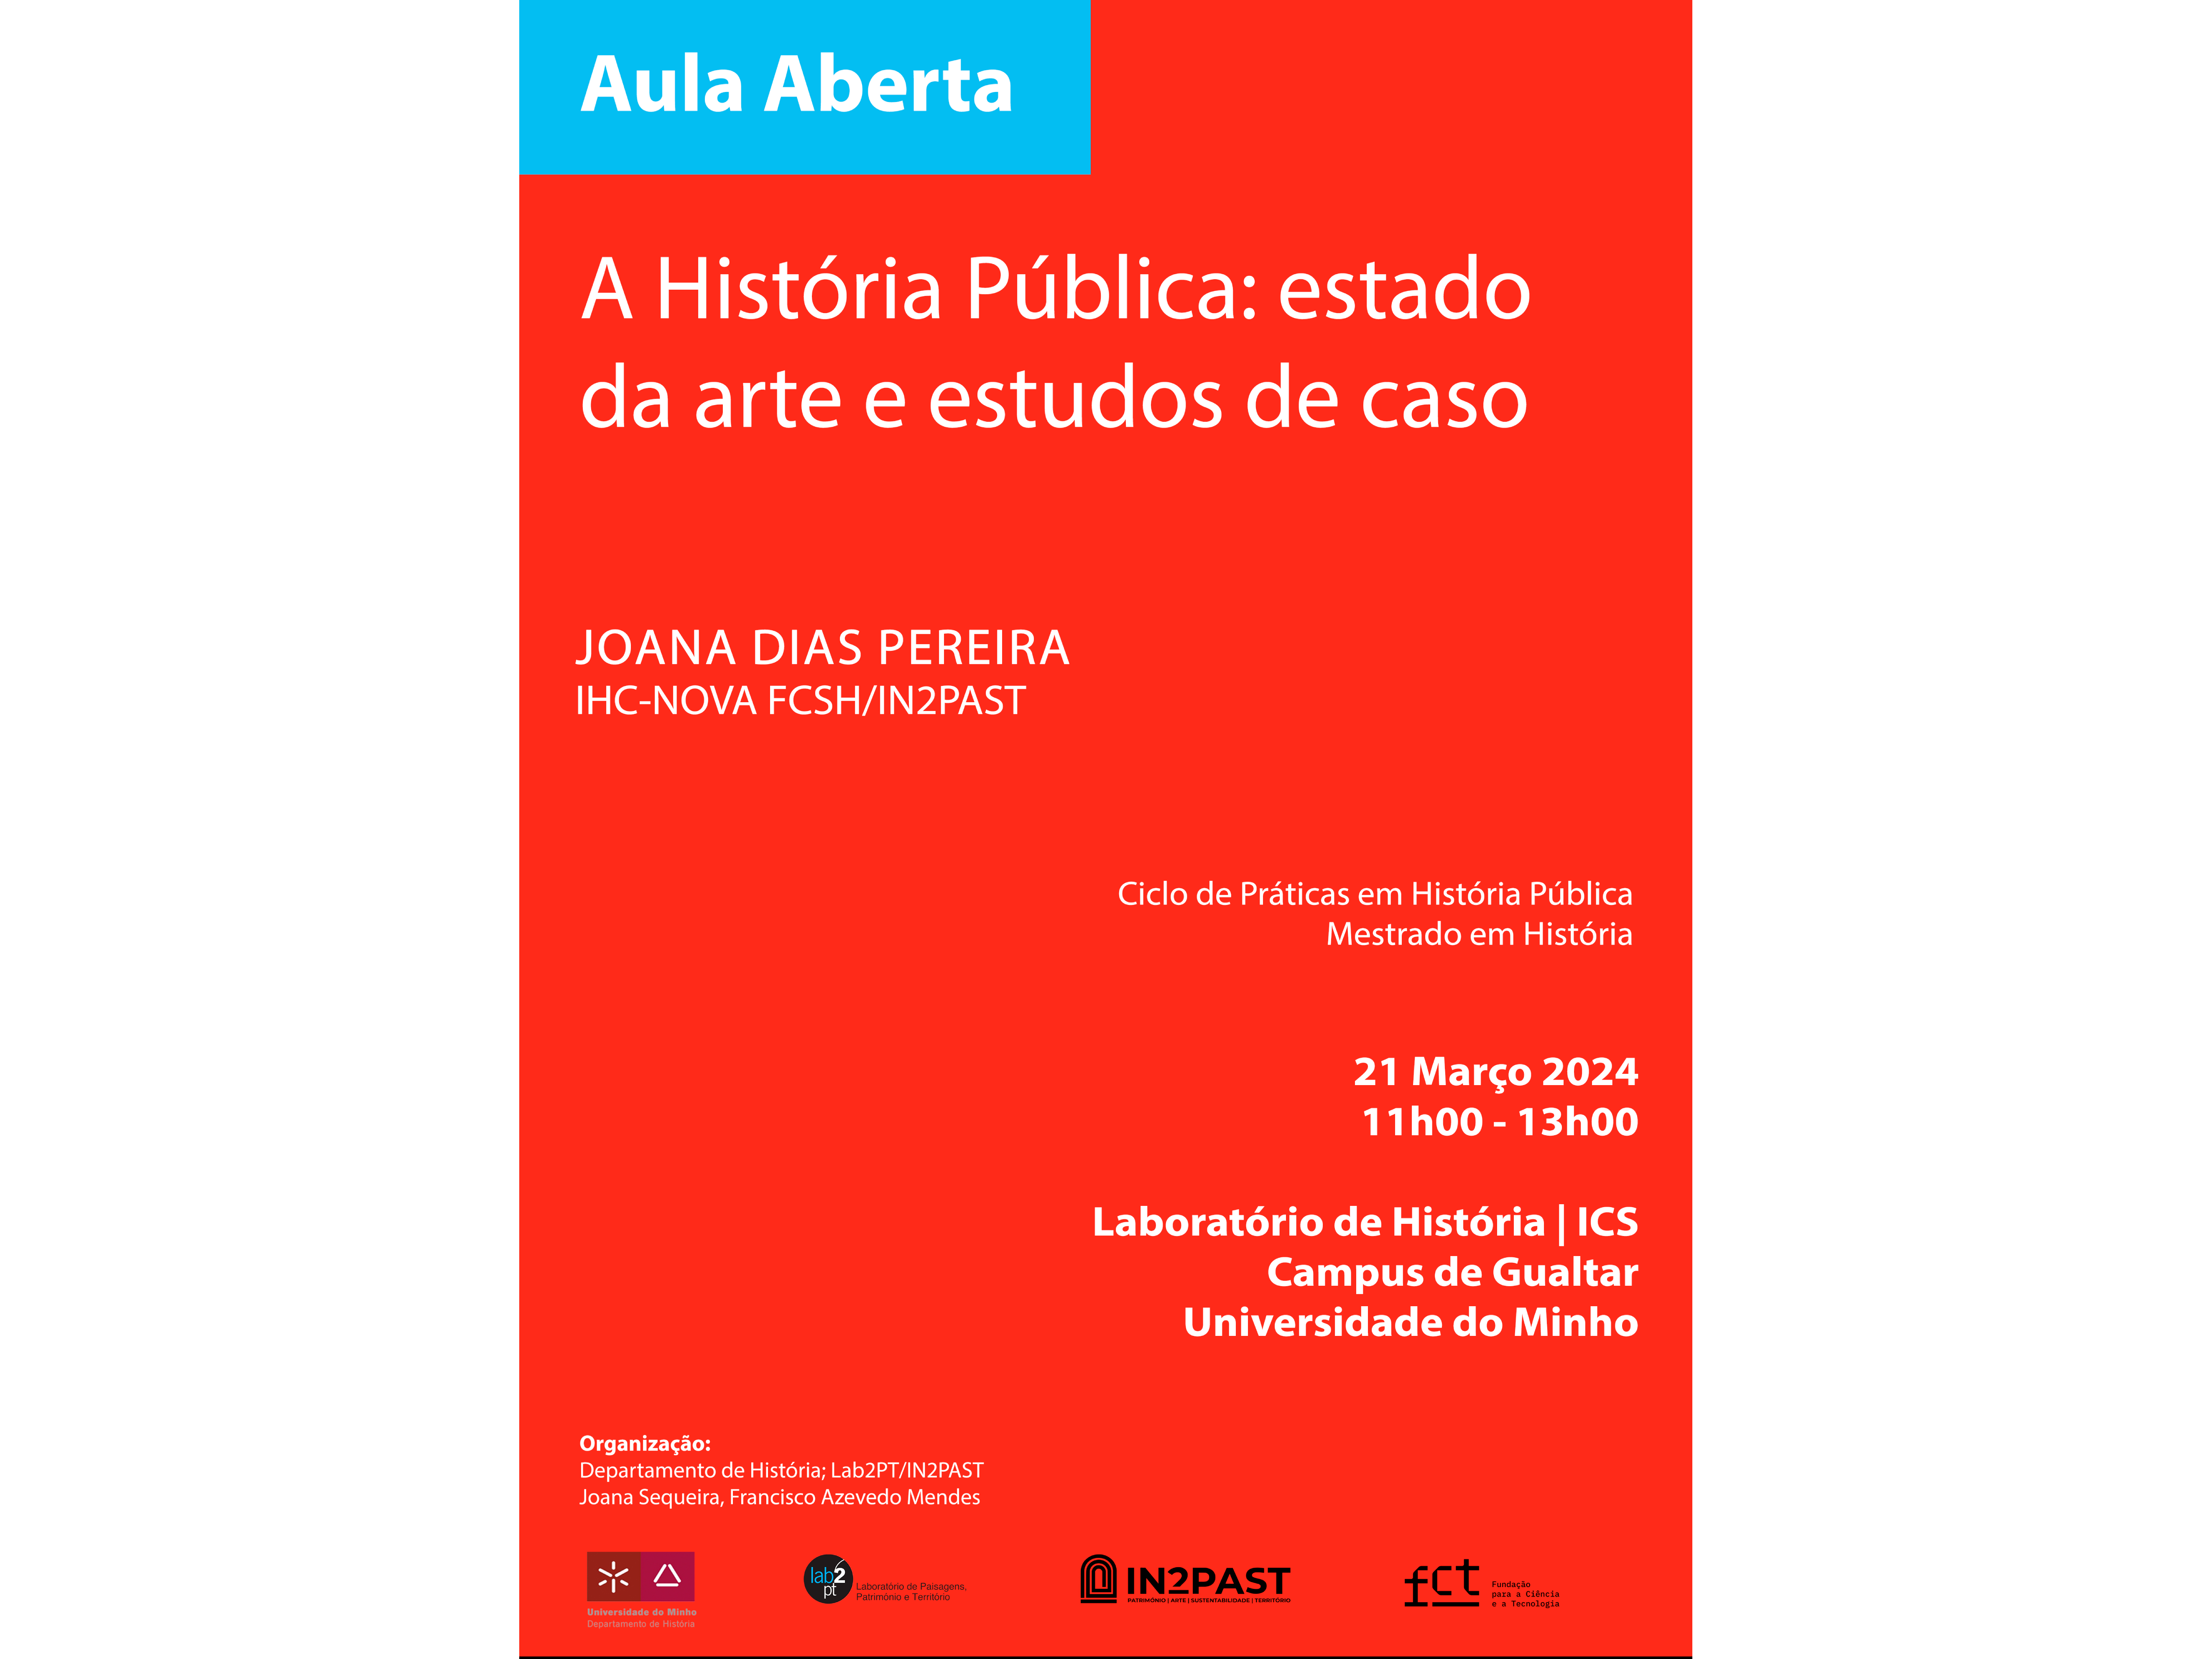 A História Pública: estado da arte e estudos de caso image